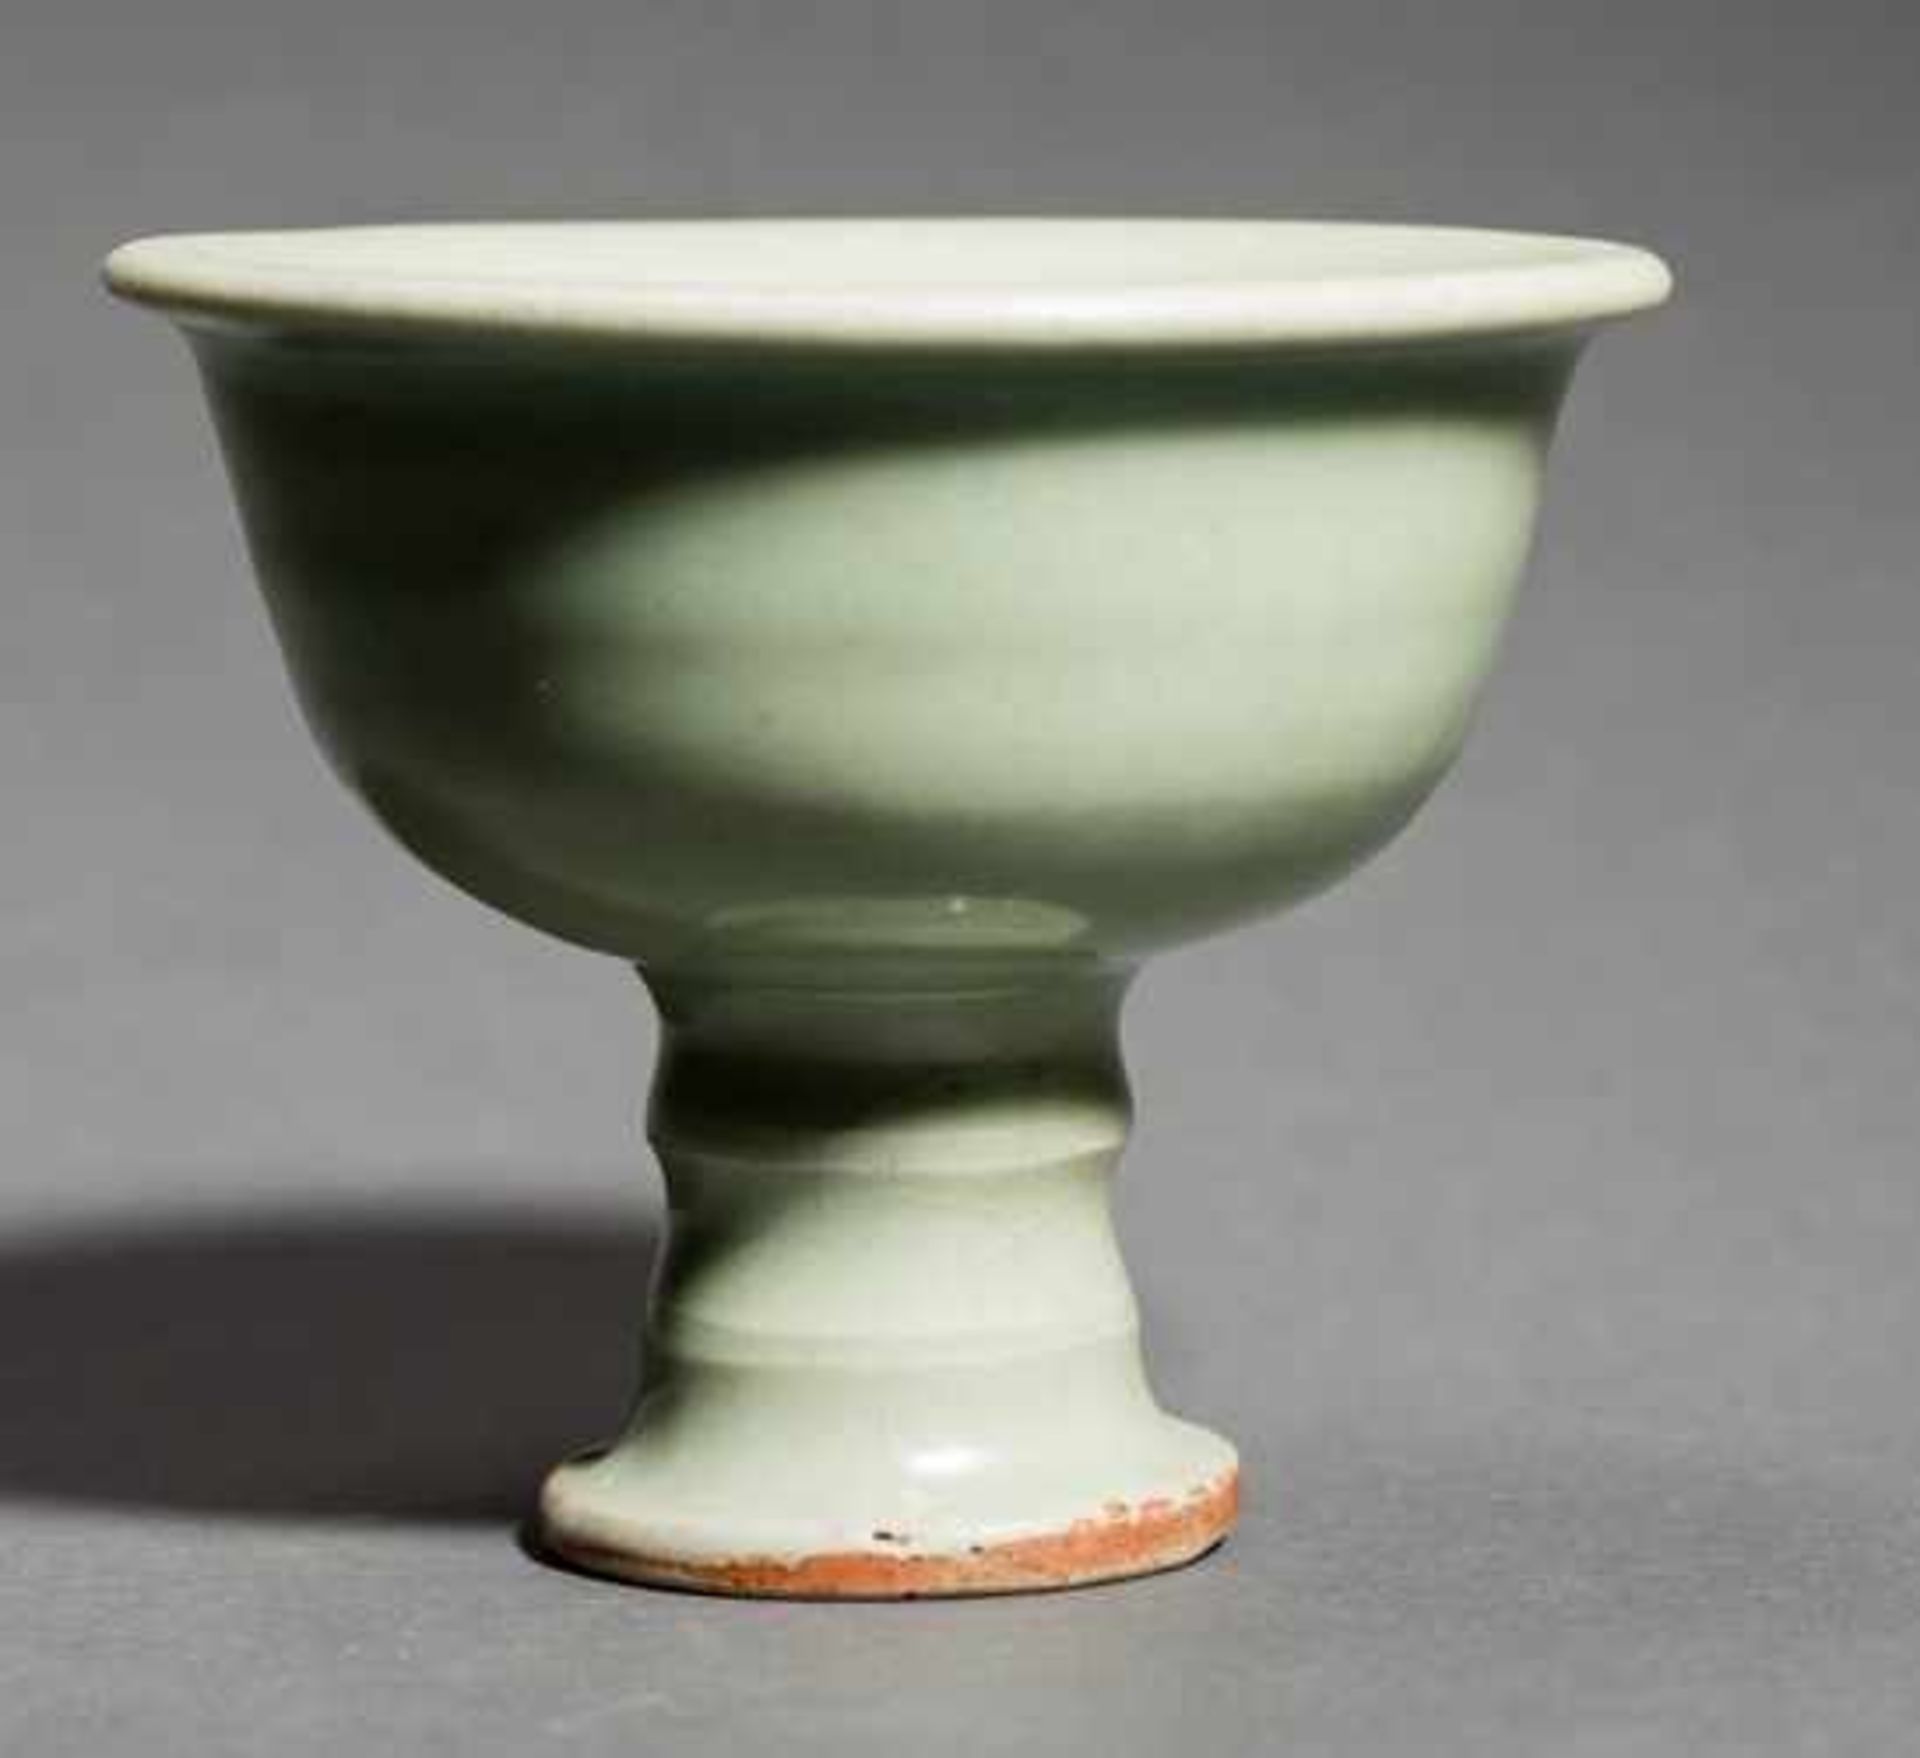 FUSSBECHER Glasierte Keramik. China, Yuan bis Ming-Dynastie (1368 – 1644) Dieser attraktive und